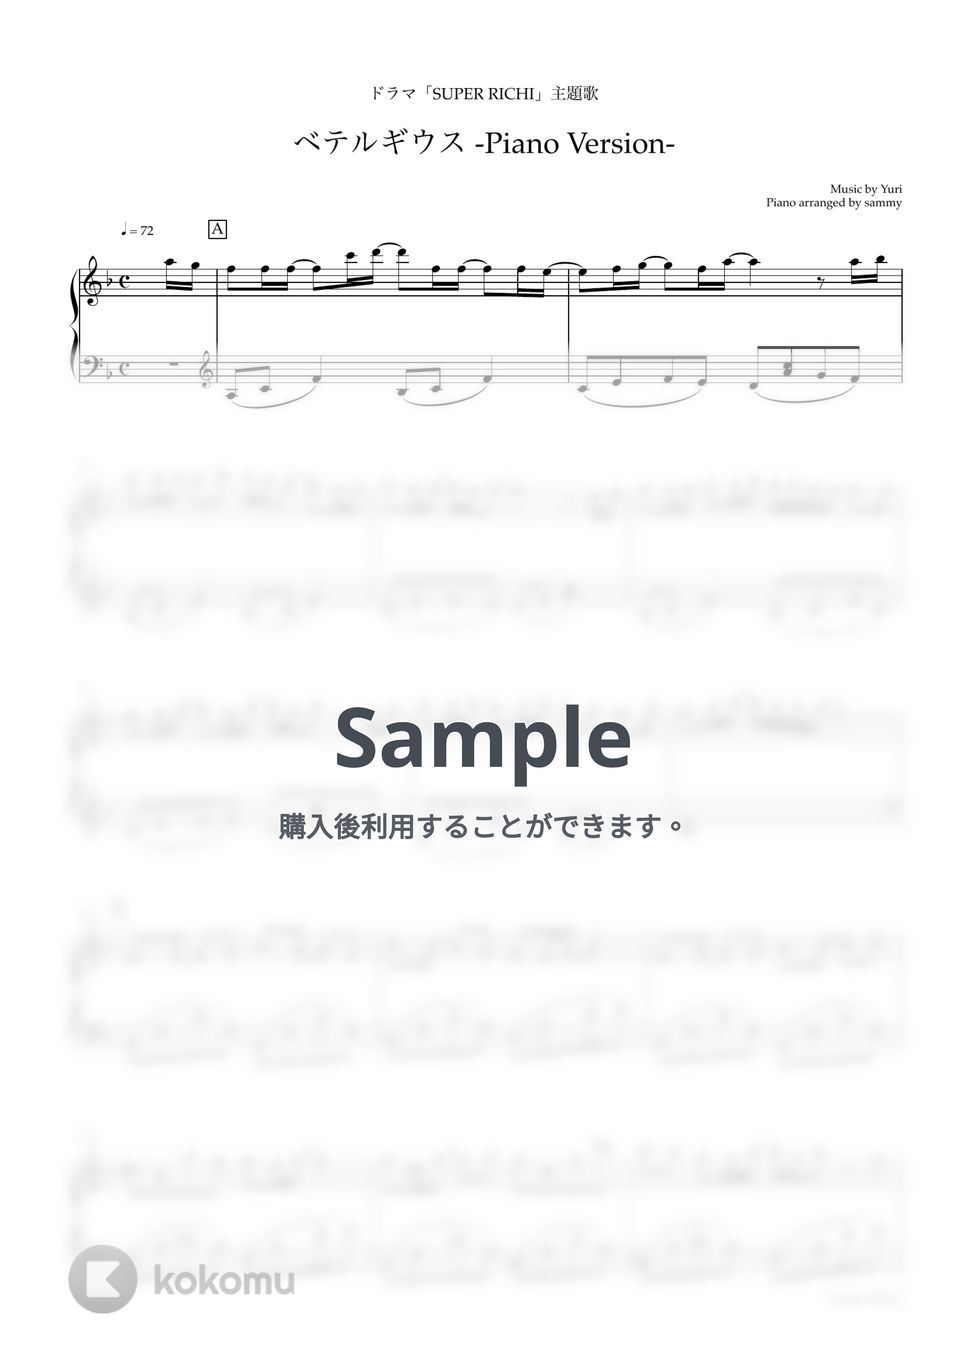 優里 - ベテルギウス -Piano Version- by sammy